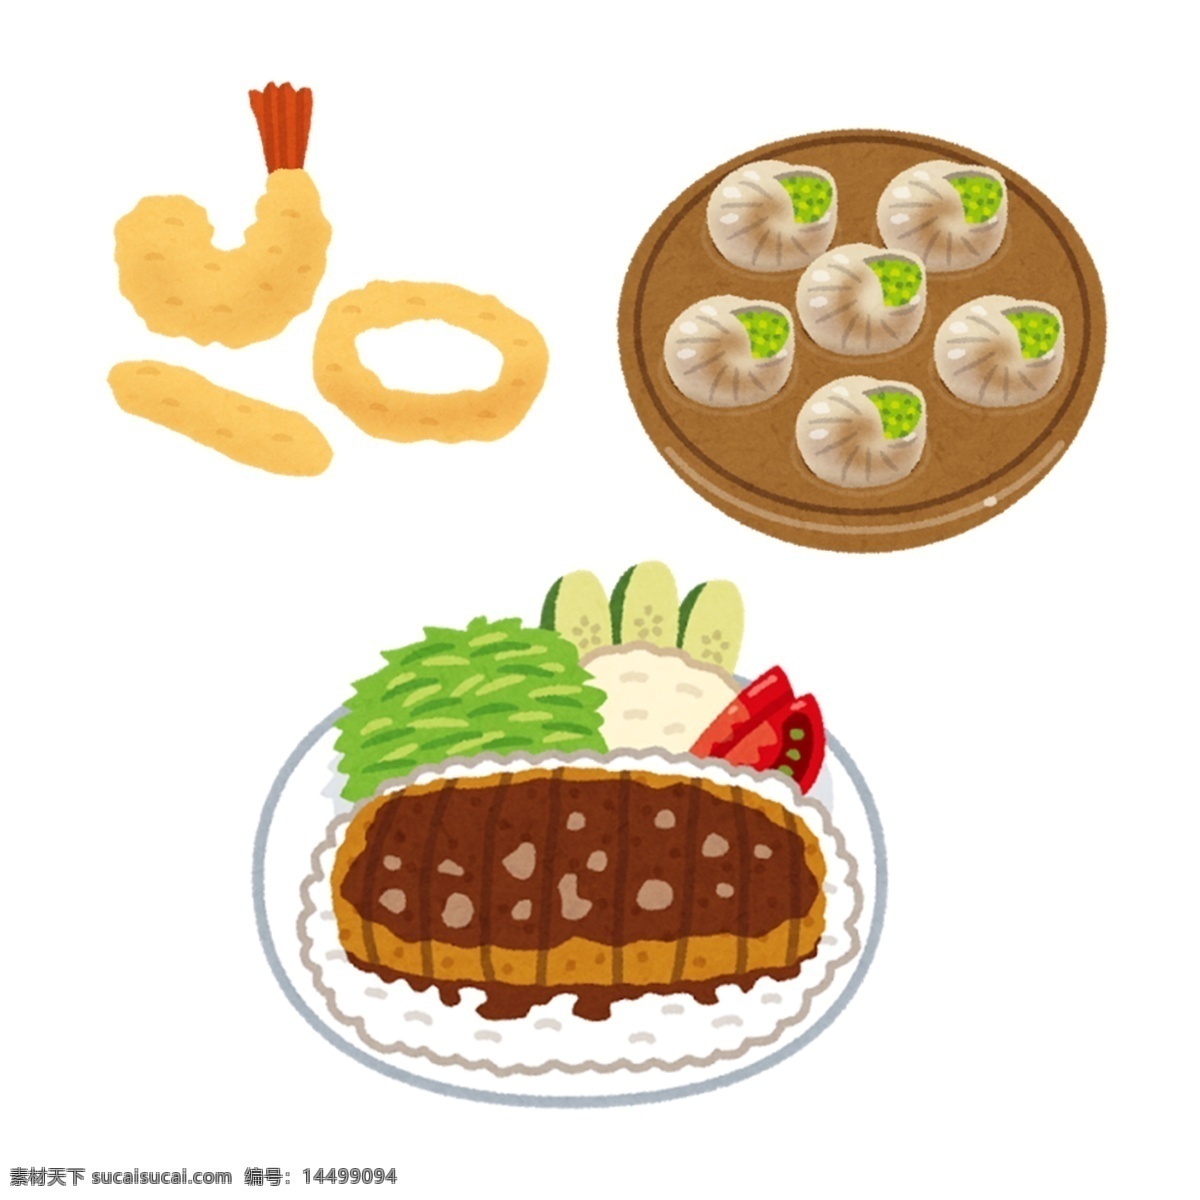 日本 水彩 手绘 食物 图标 设计素材 日本水彩 食物图标